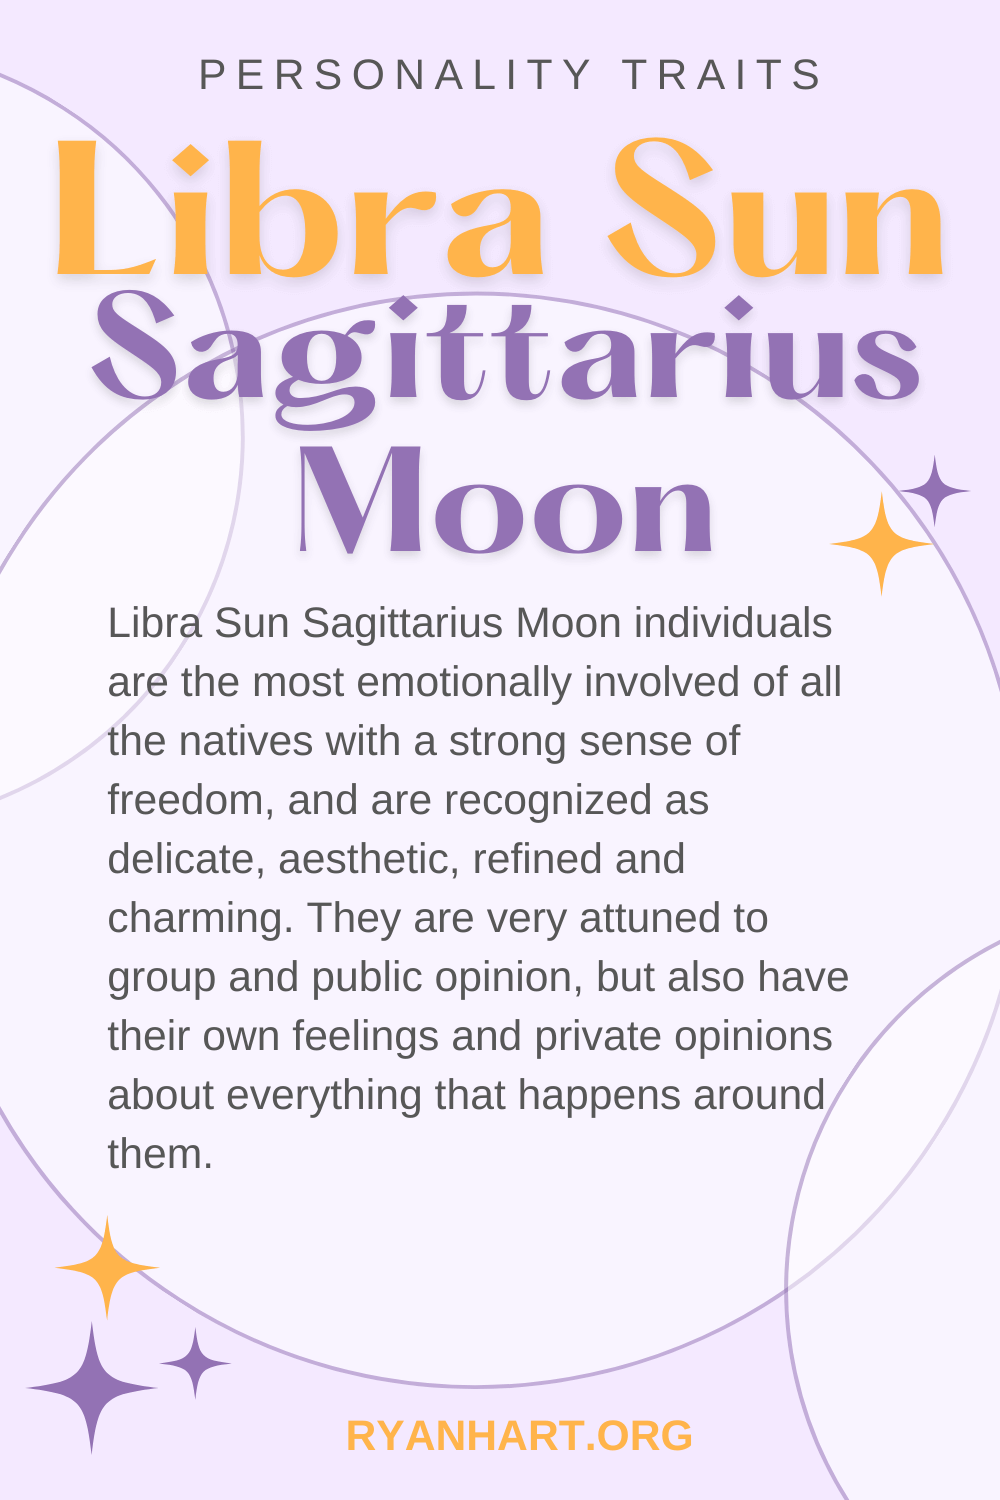 Libra Sun Sagittarius Moon Description